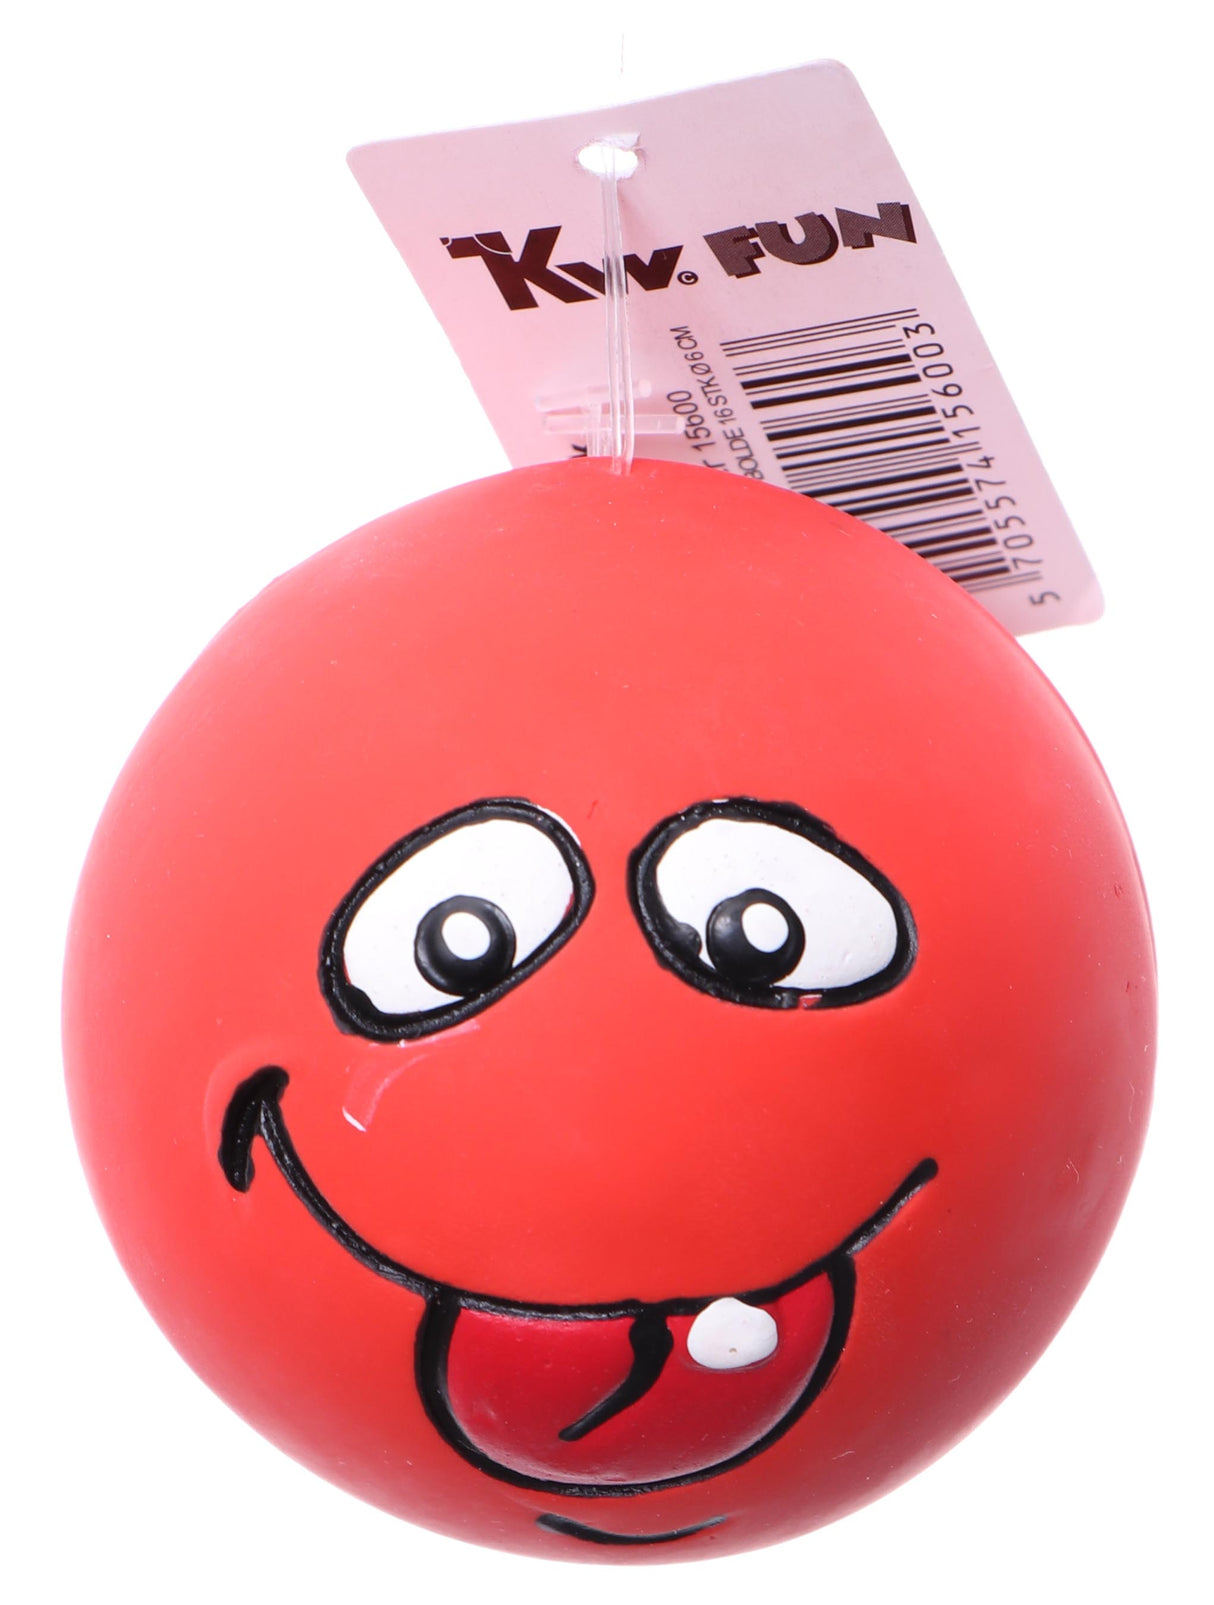 Beskrivelse: En sjov Pivedyr bold med et smiley ansigt på det fra Kw.